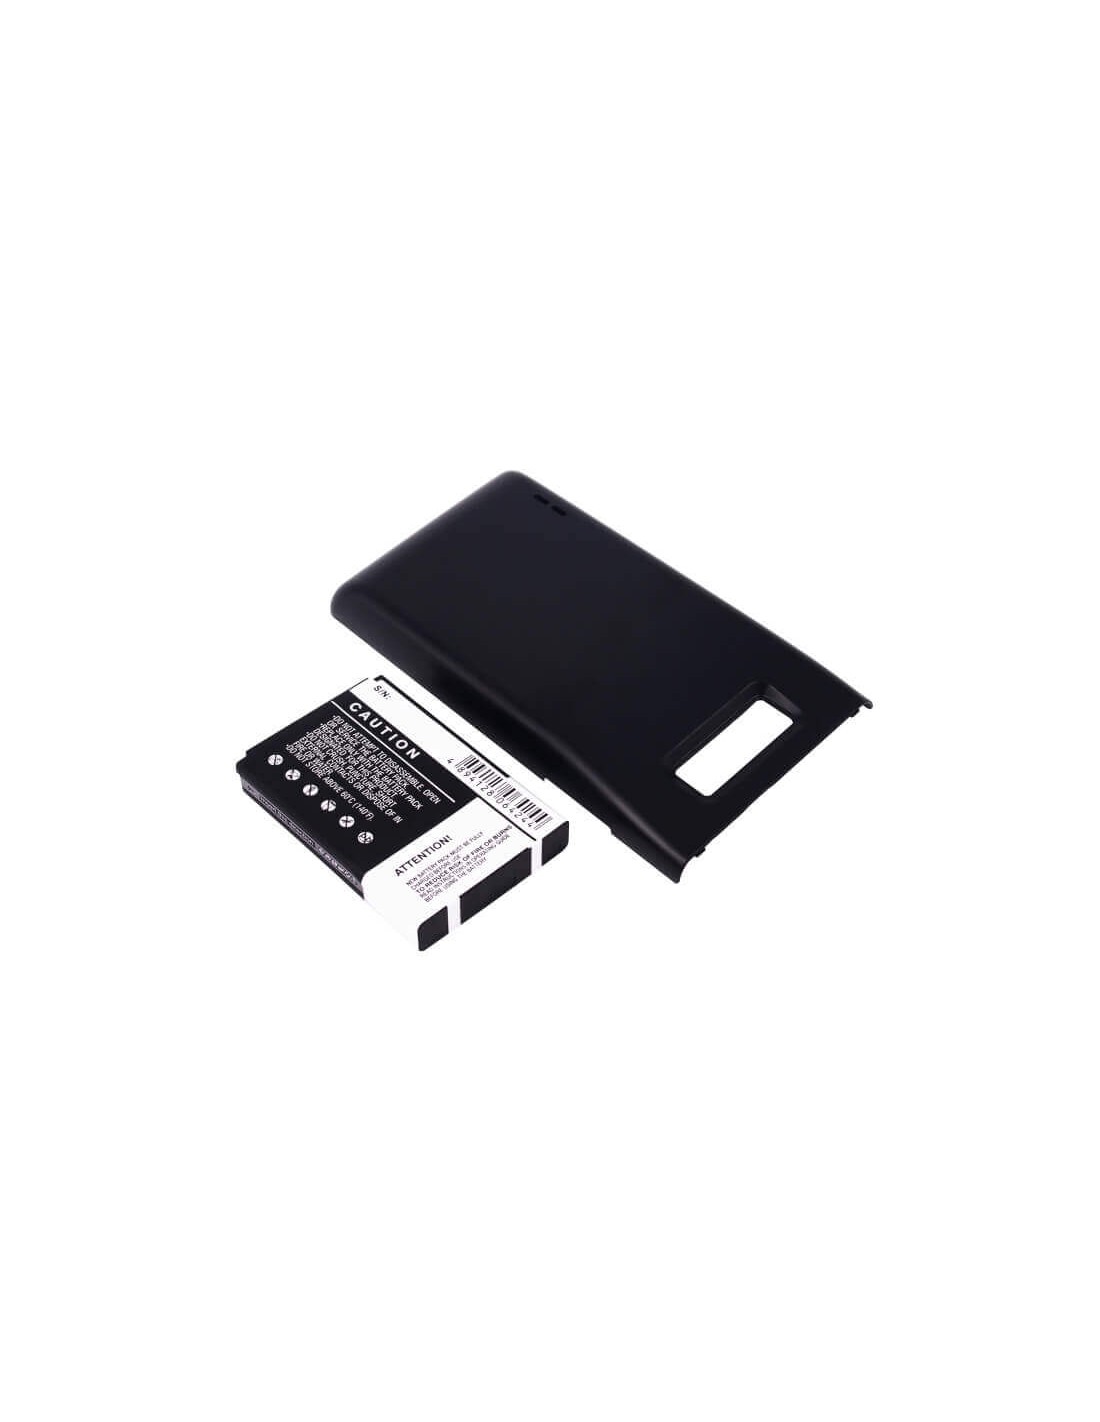 Battery for LG Optimus P705, Optimus P705g, black cover 3.7V, 2900mAh - 10.73Wh